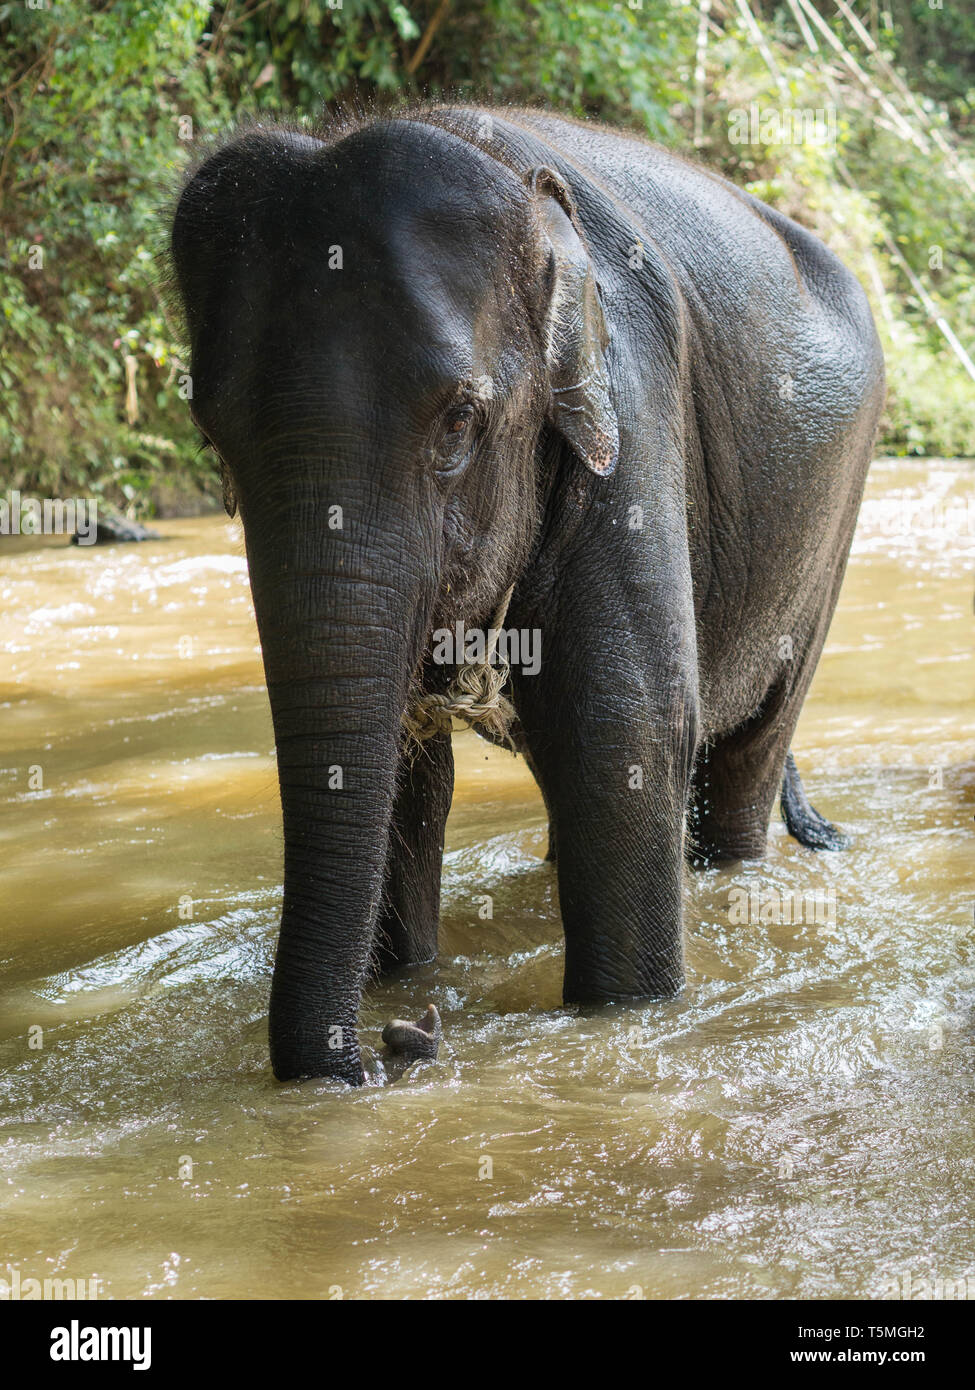 Un jeune éléphant asiatique avec une corde autour du cou est debout dans une rivière peu profonde après la baignade Banque D'Images